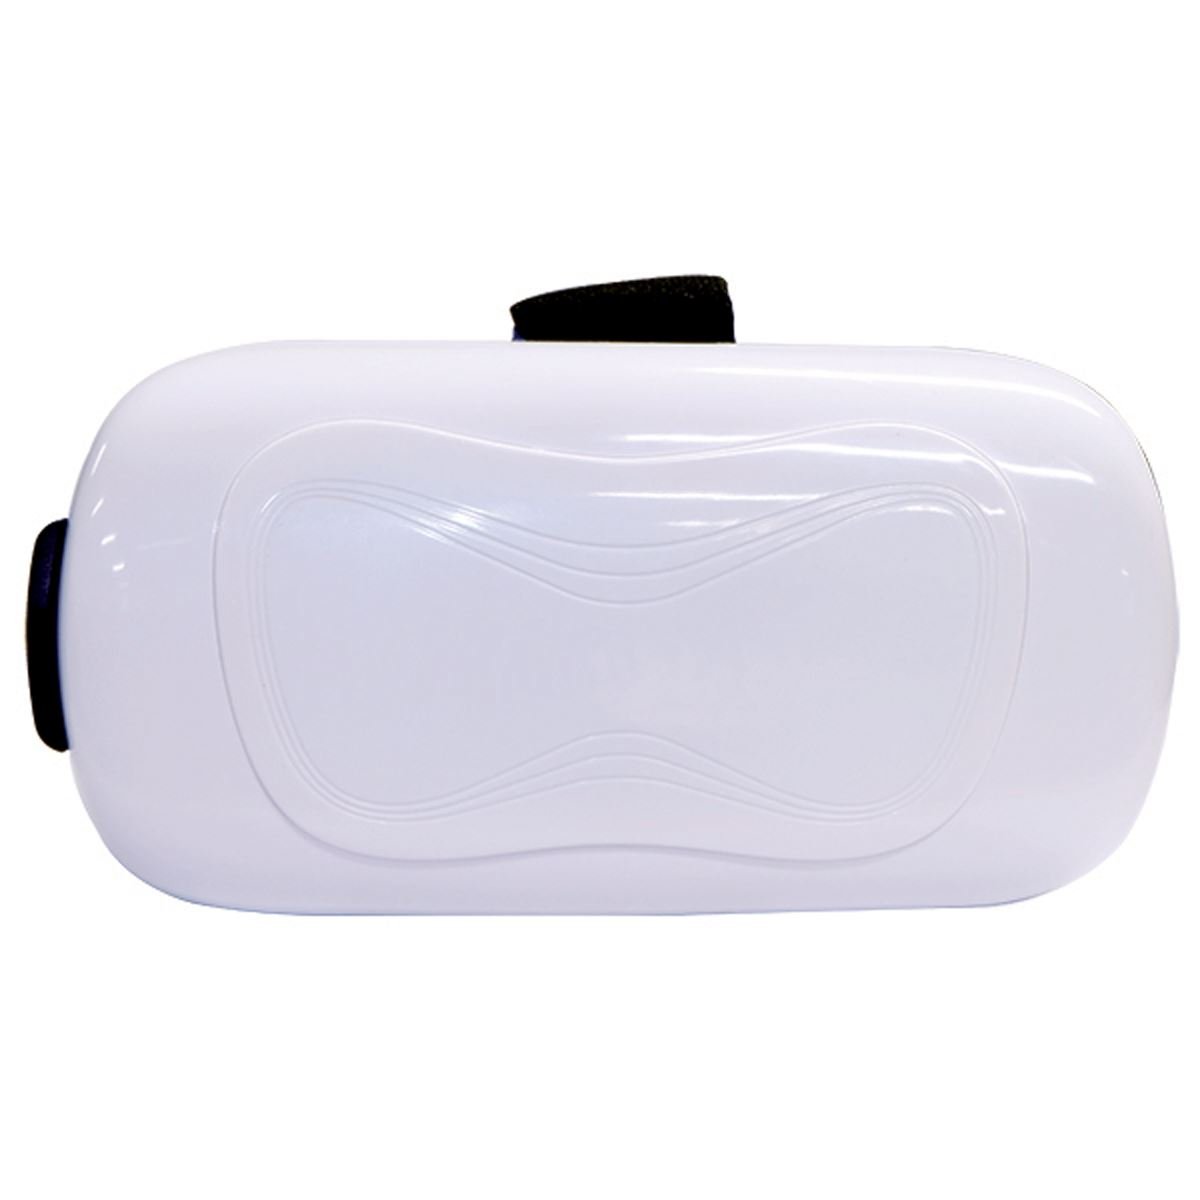 Celular ZTE Blade V580 Color Plata R9 + Lentes 3D Xtreme VR (Telcel)